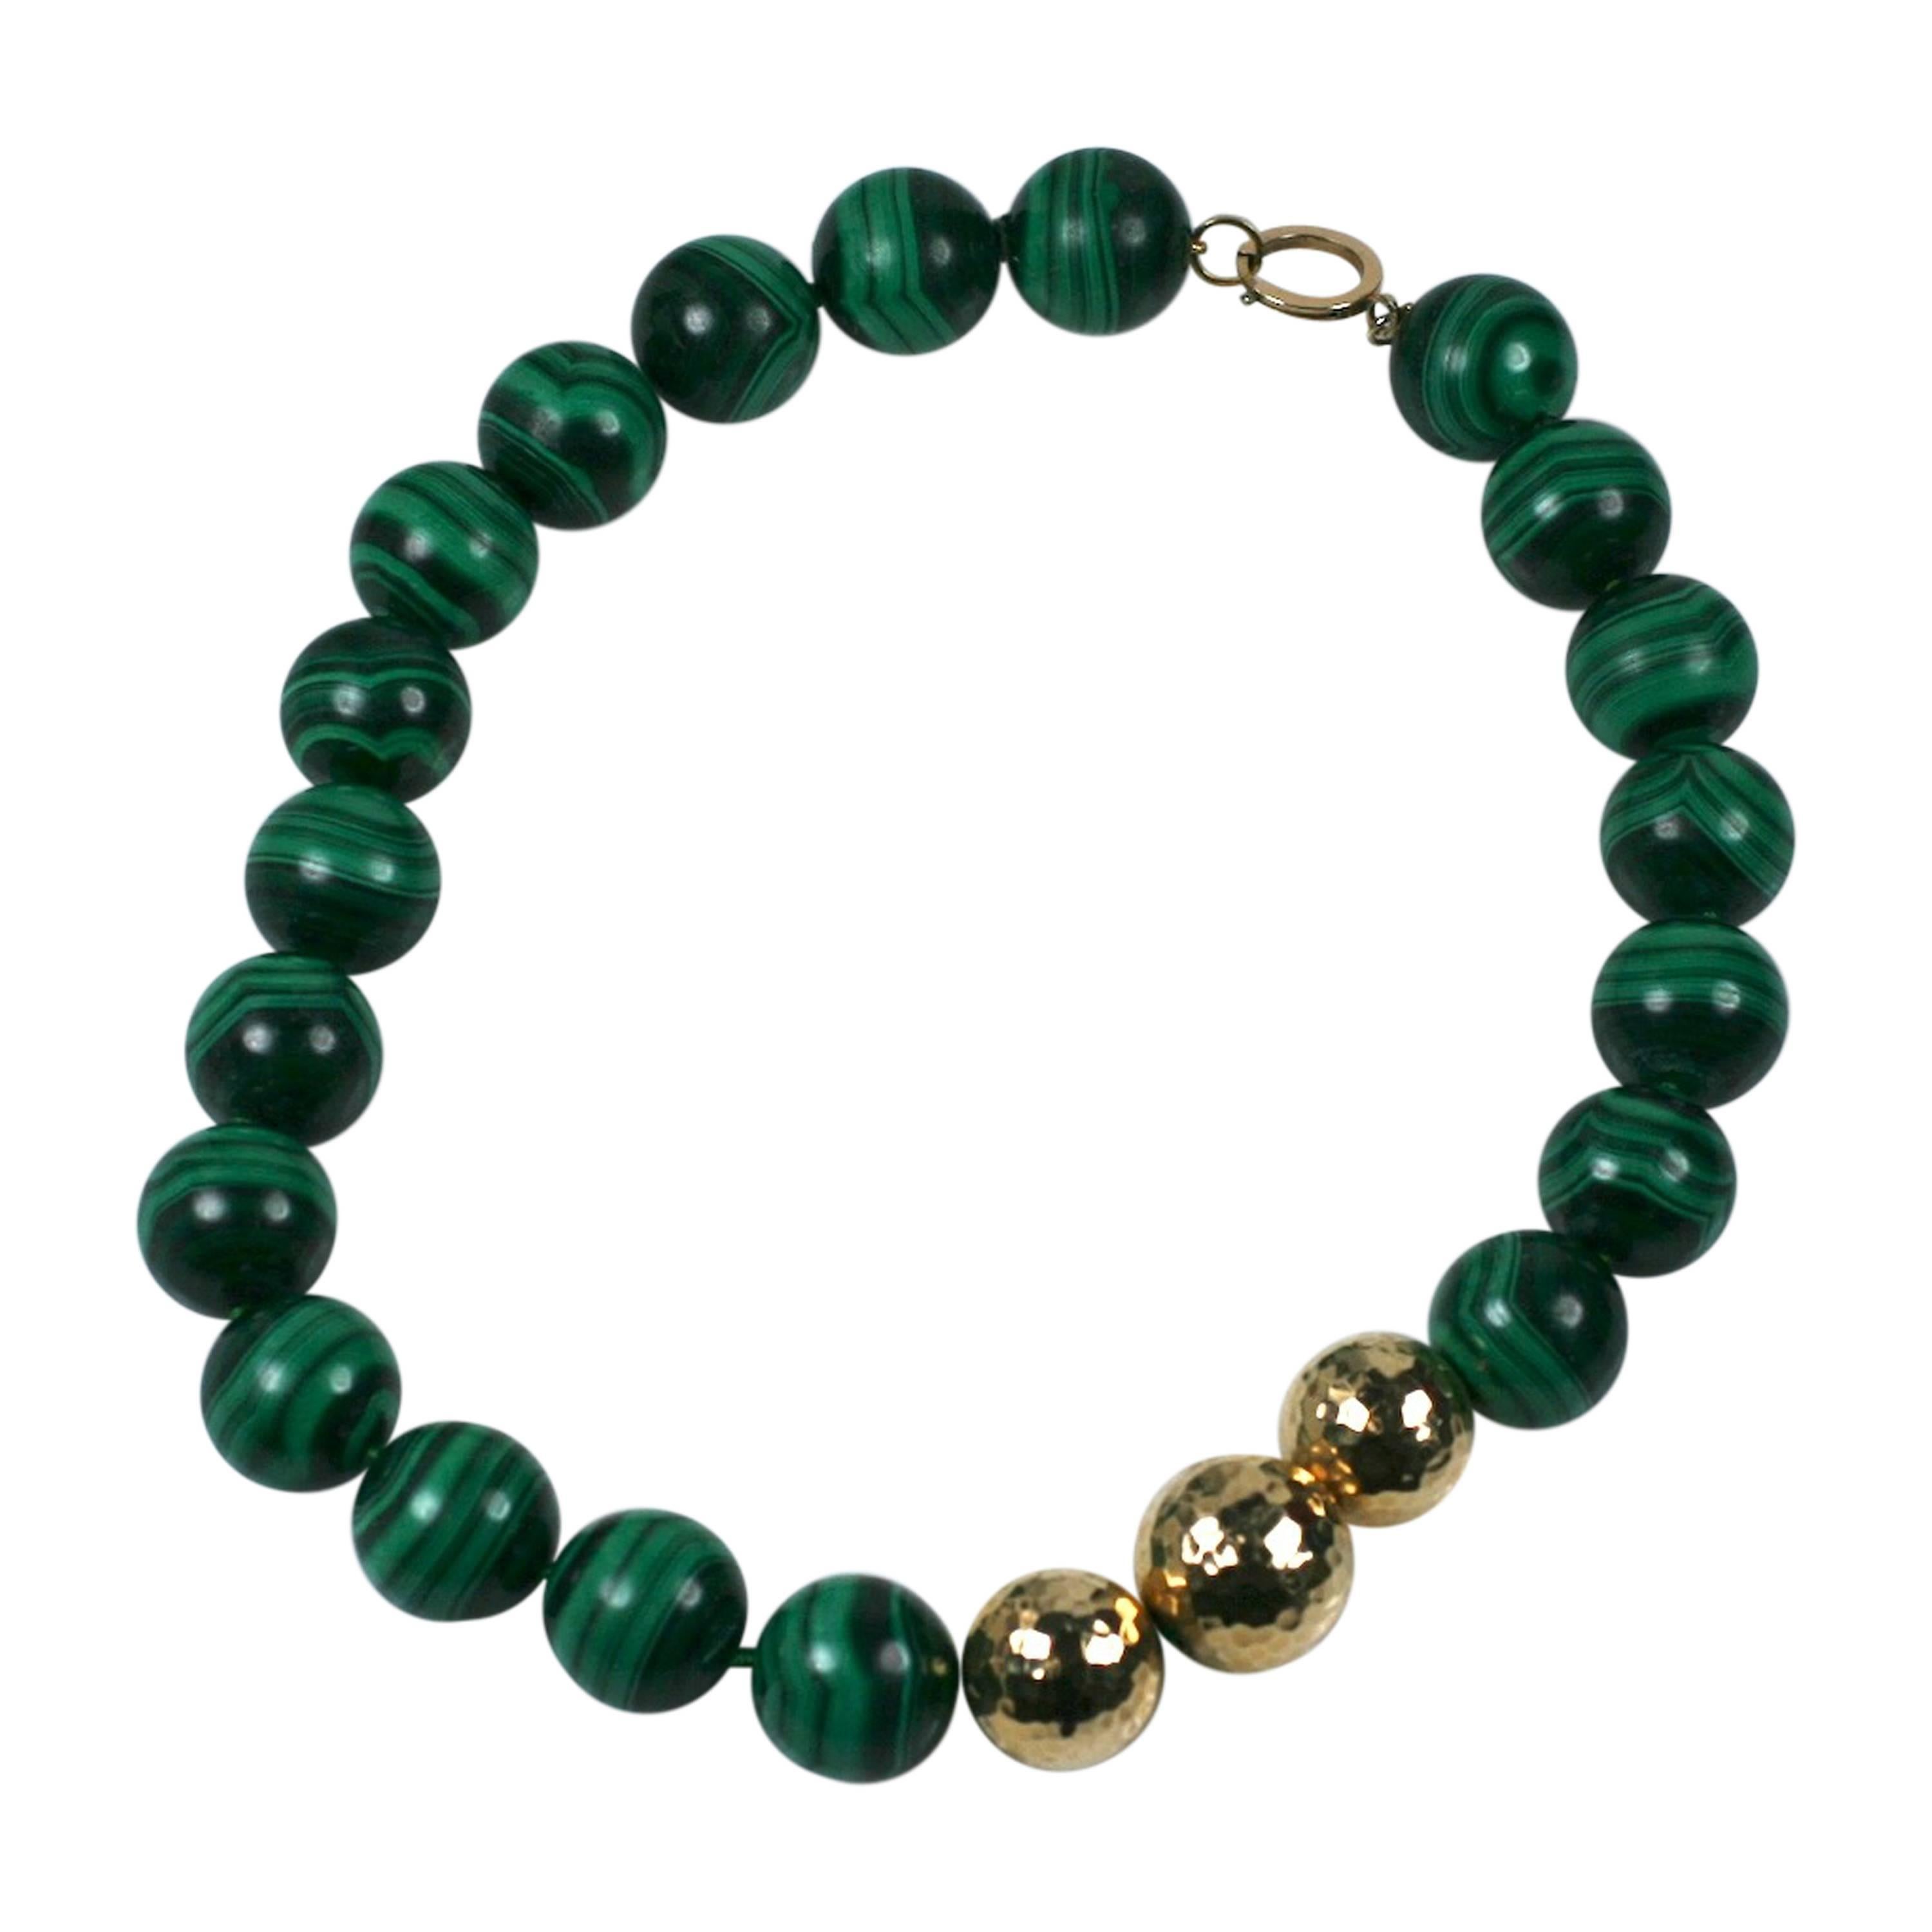 Oversized Malachite Beads